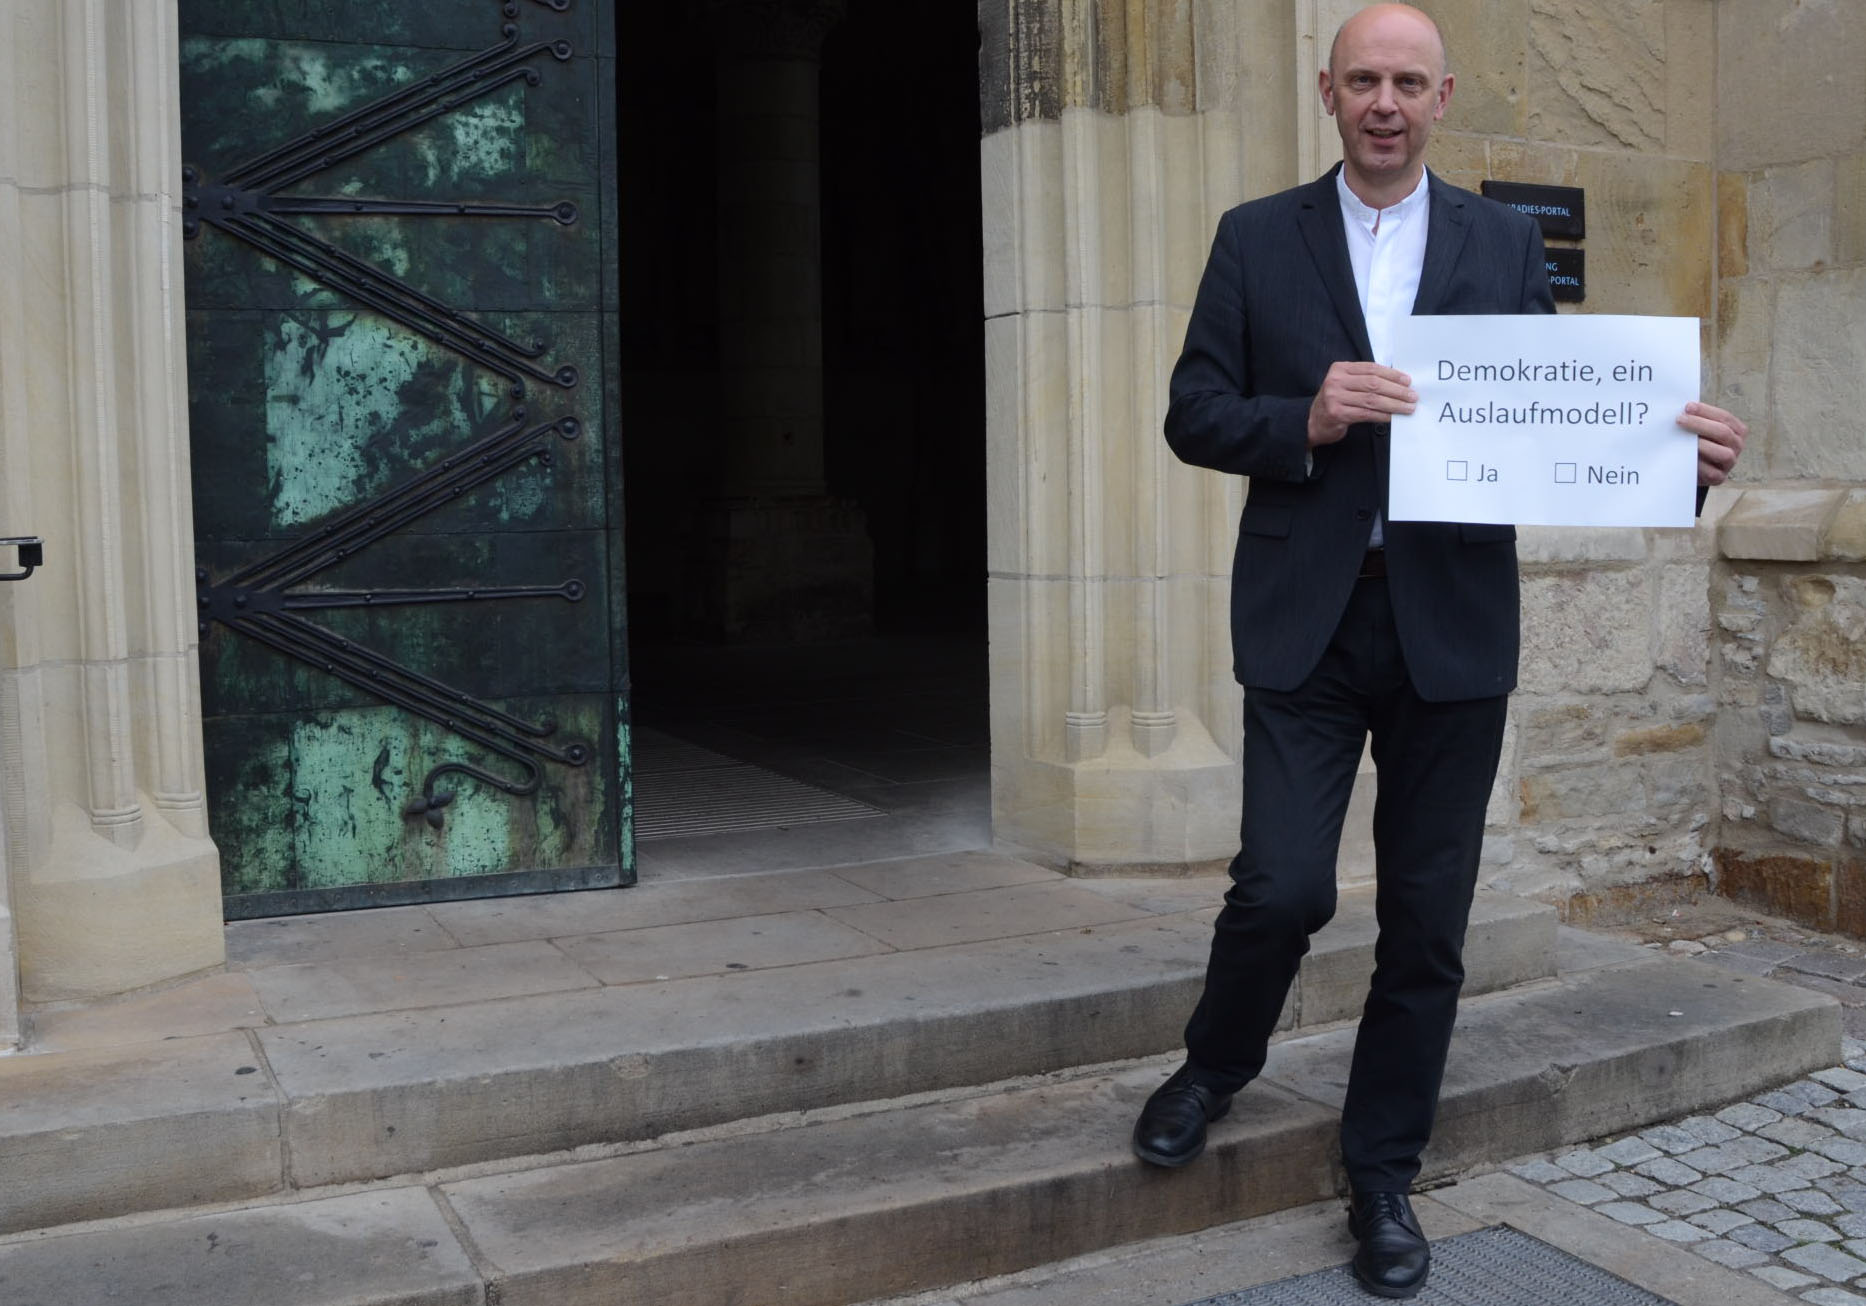 Dompropst Kurt Schulte steht vor der halb geöffneten Eingangstür des Doms. In seinen Händen hält er einen großen weißen Zettel mit der Aufschrift "Demokratie - ein Auslaufmodell?" sowie den Ankreuzmöglichkeiten "Ja" und "Nein".